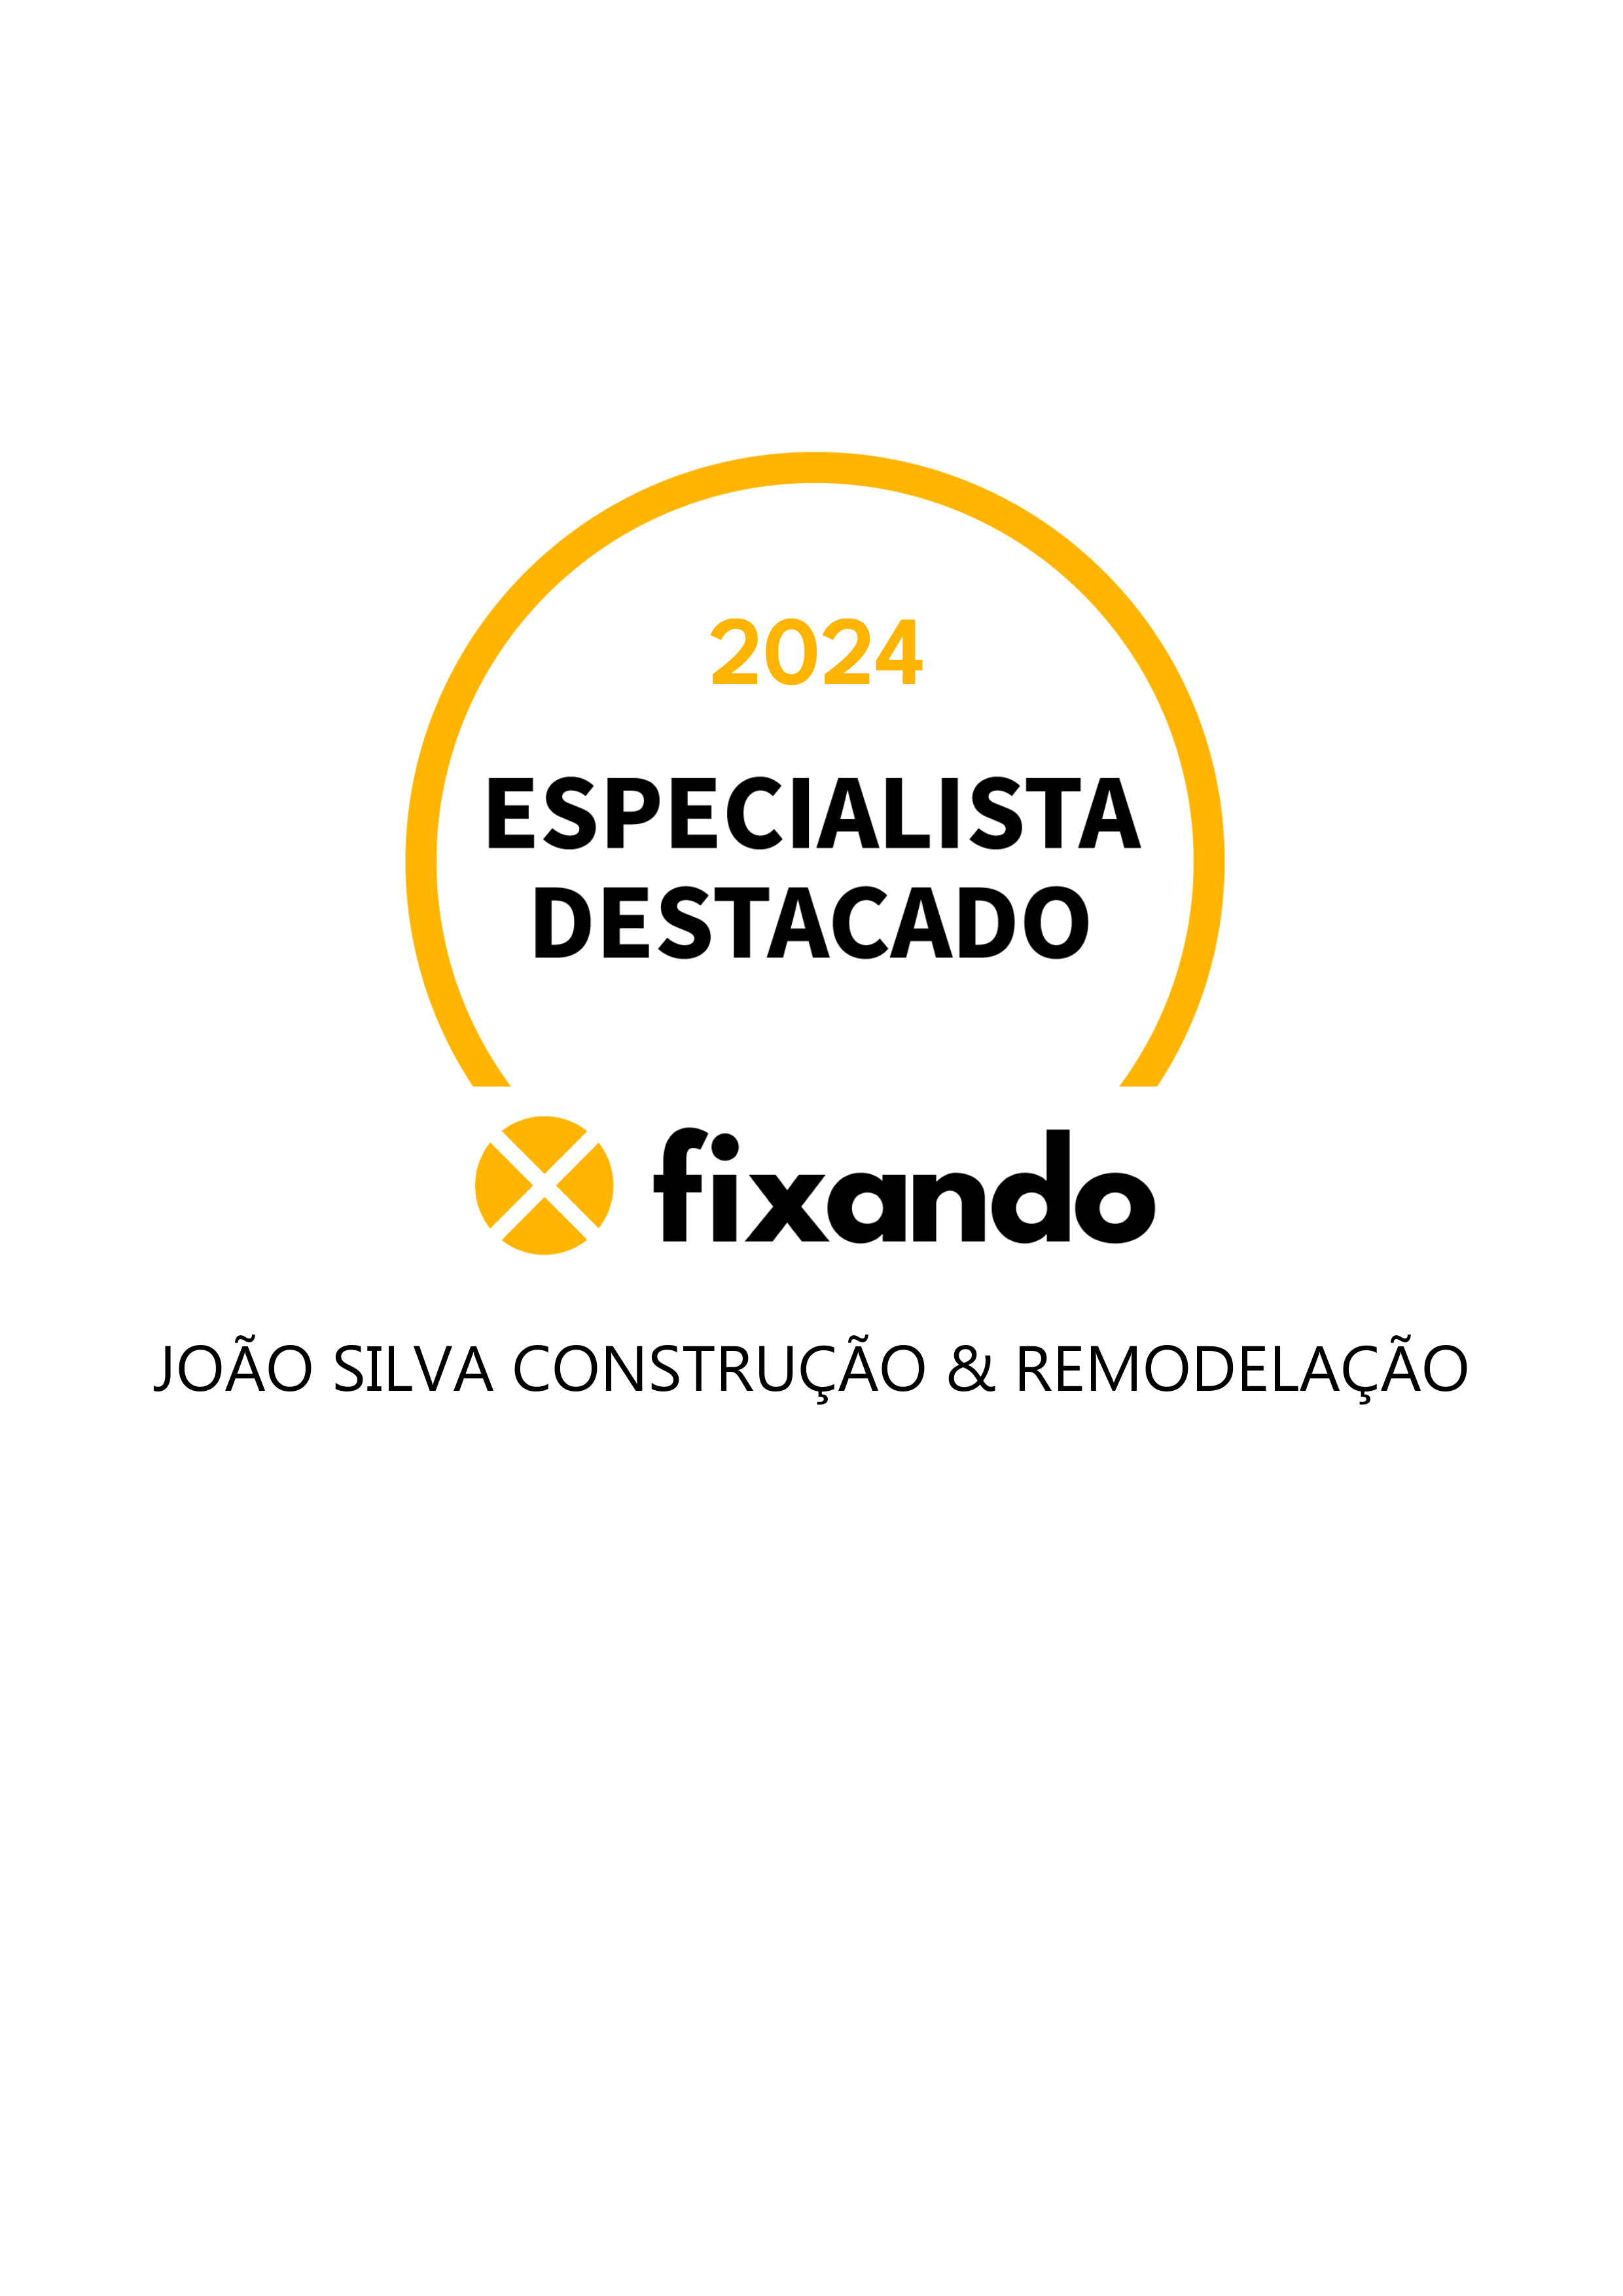 João Silva Construção & Remodelação - Viana do Castelo - Remodelação de Cozinhas